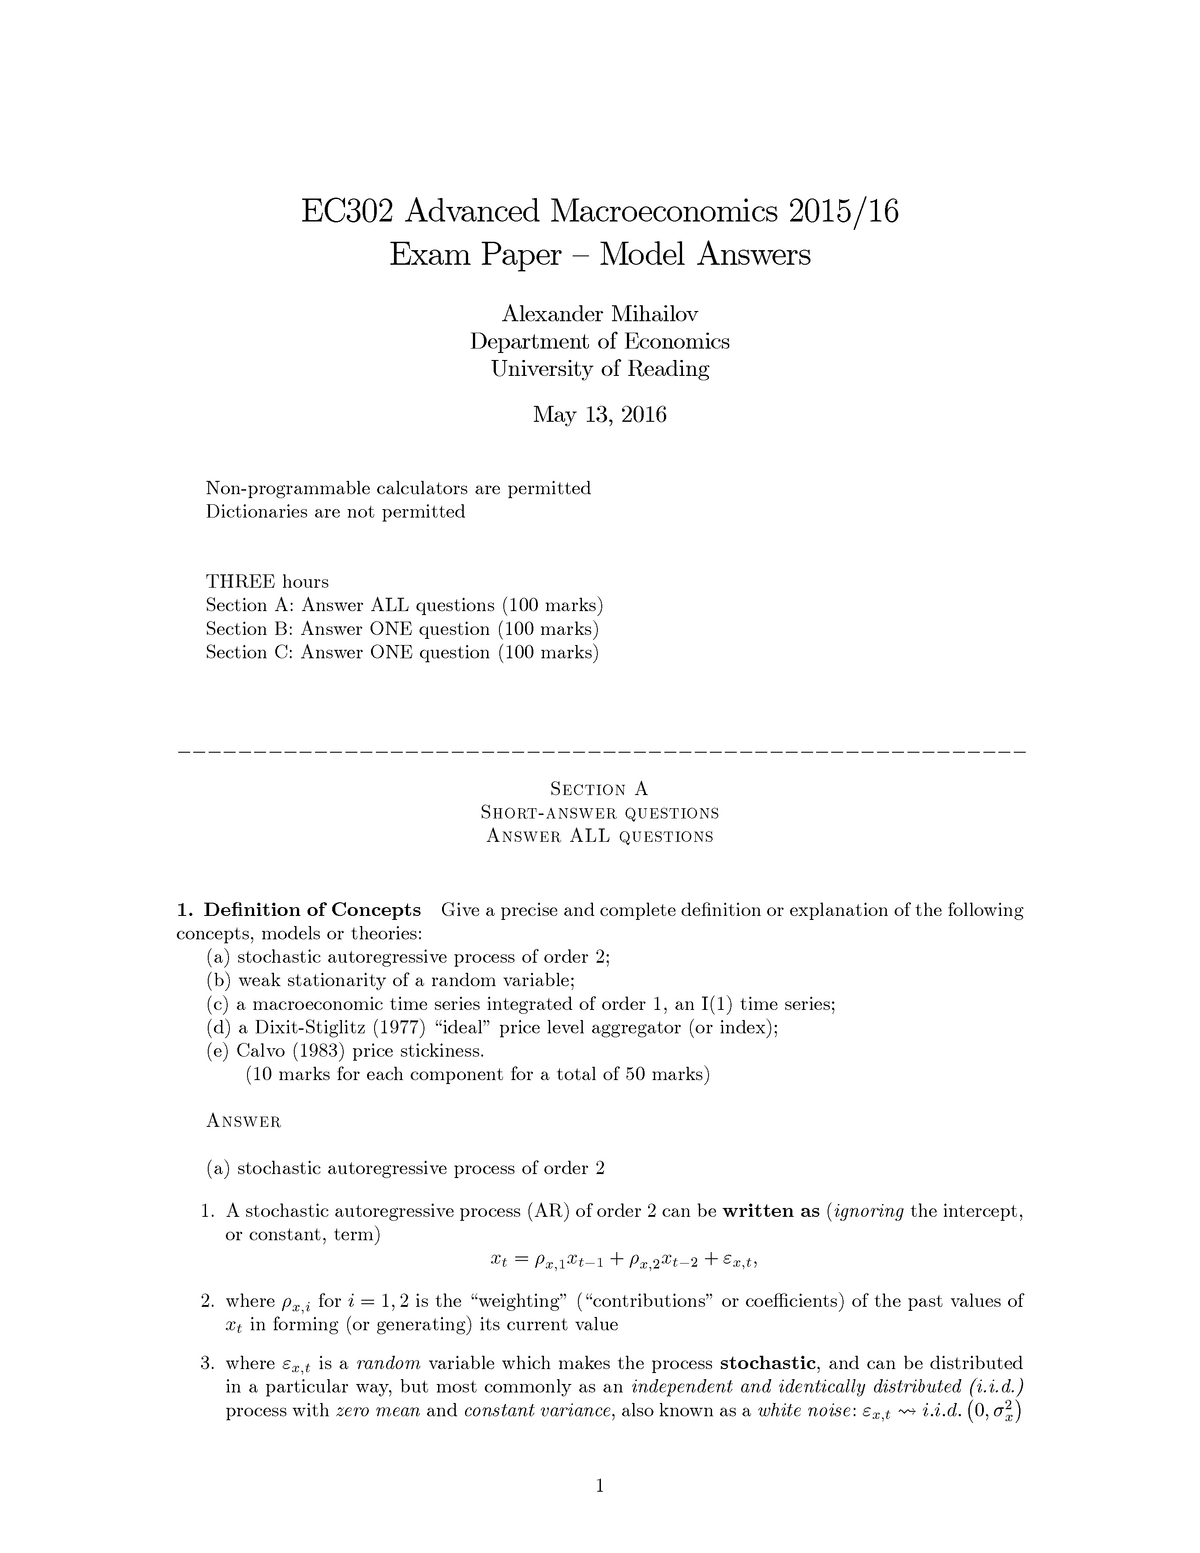 Exam 2016, answers EC302 Advanced Macroeconomics 2015 16 Exam Paper